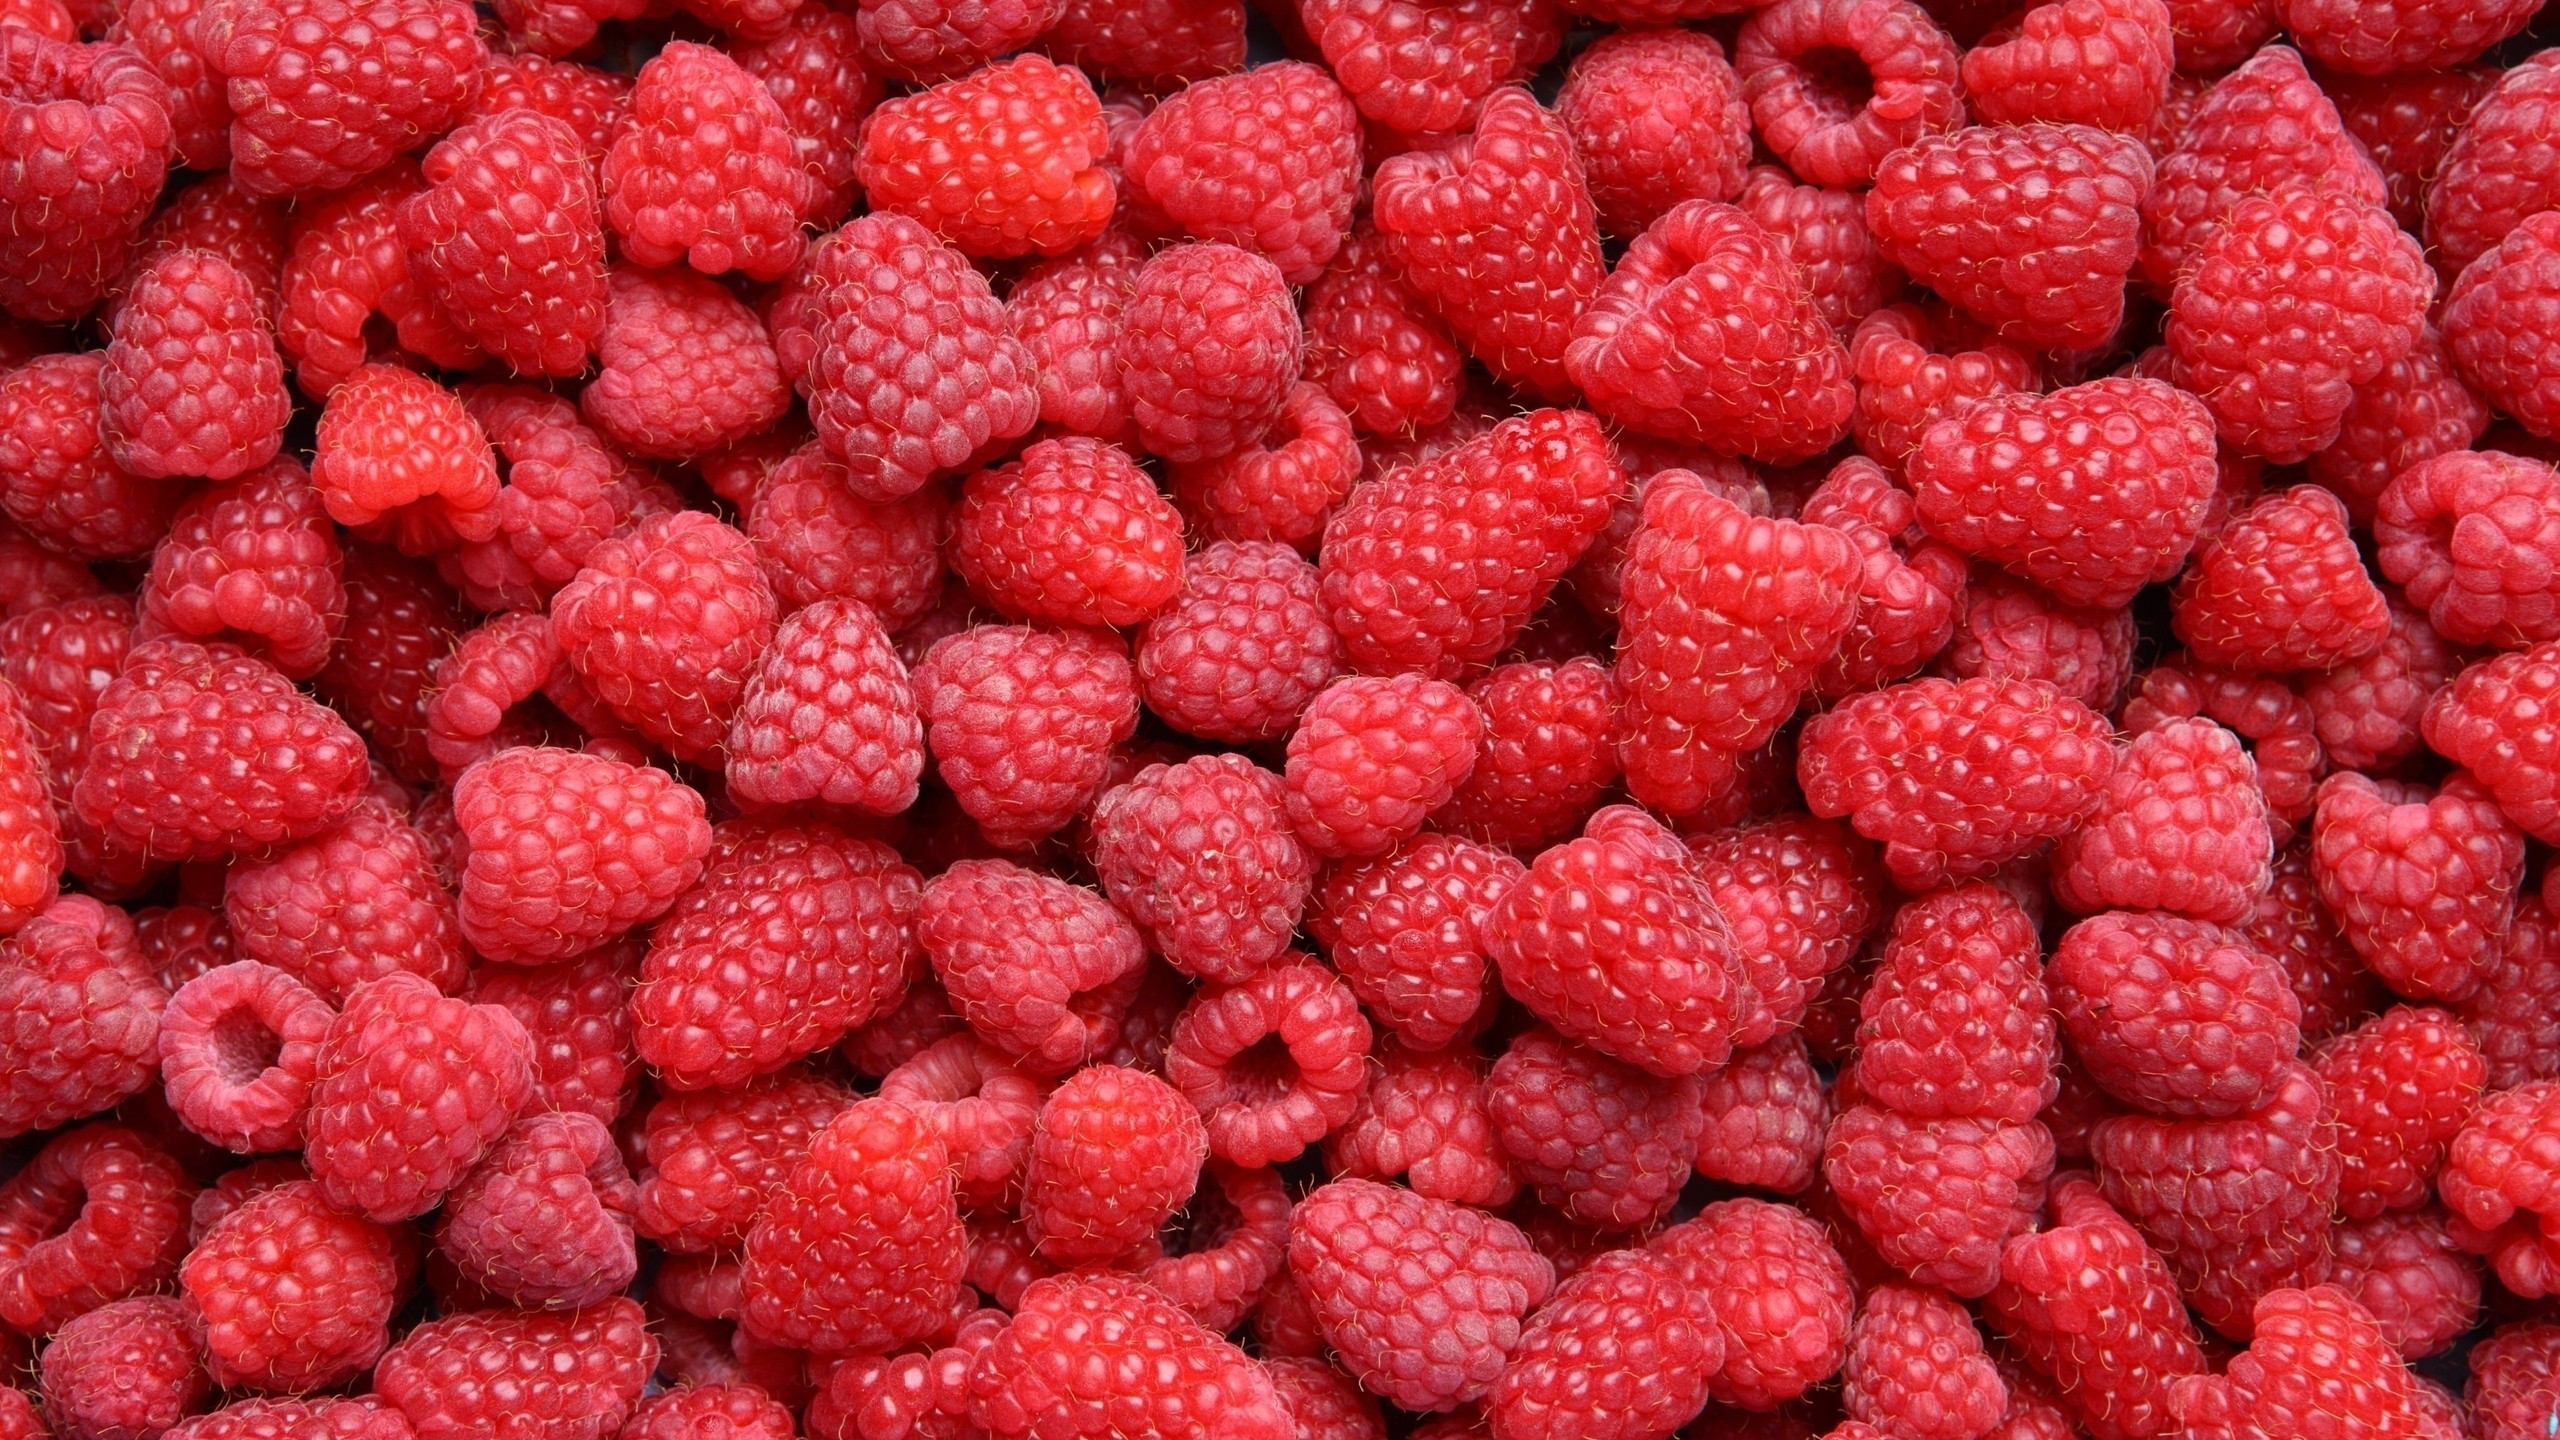 General 2560x1440 food raspberries berries fruit red closeup